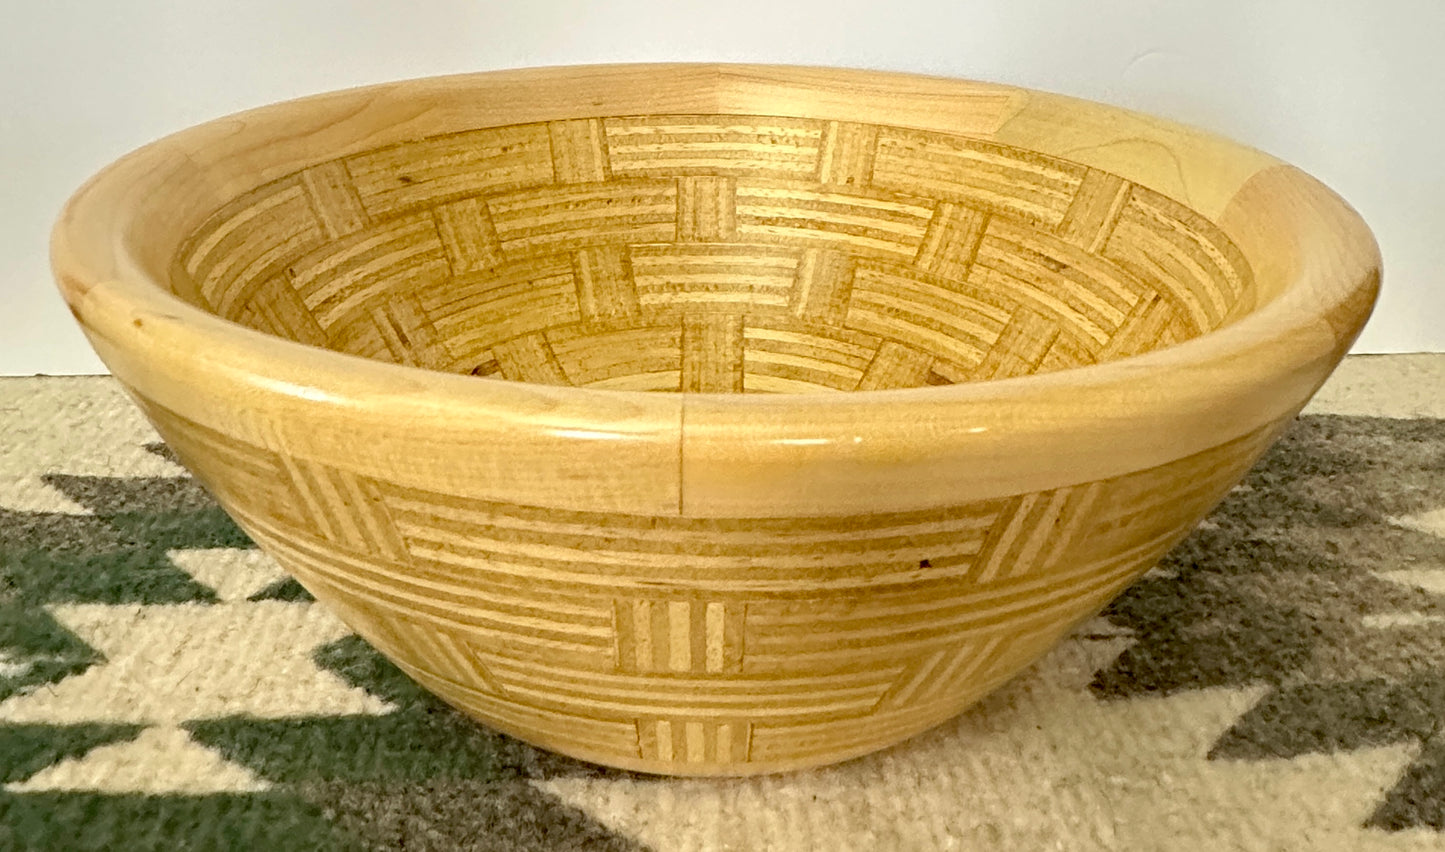 Wooden Bowl - Basket weave